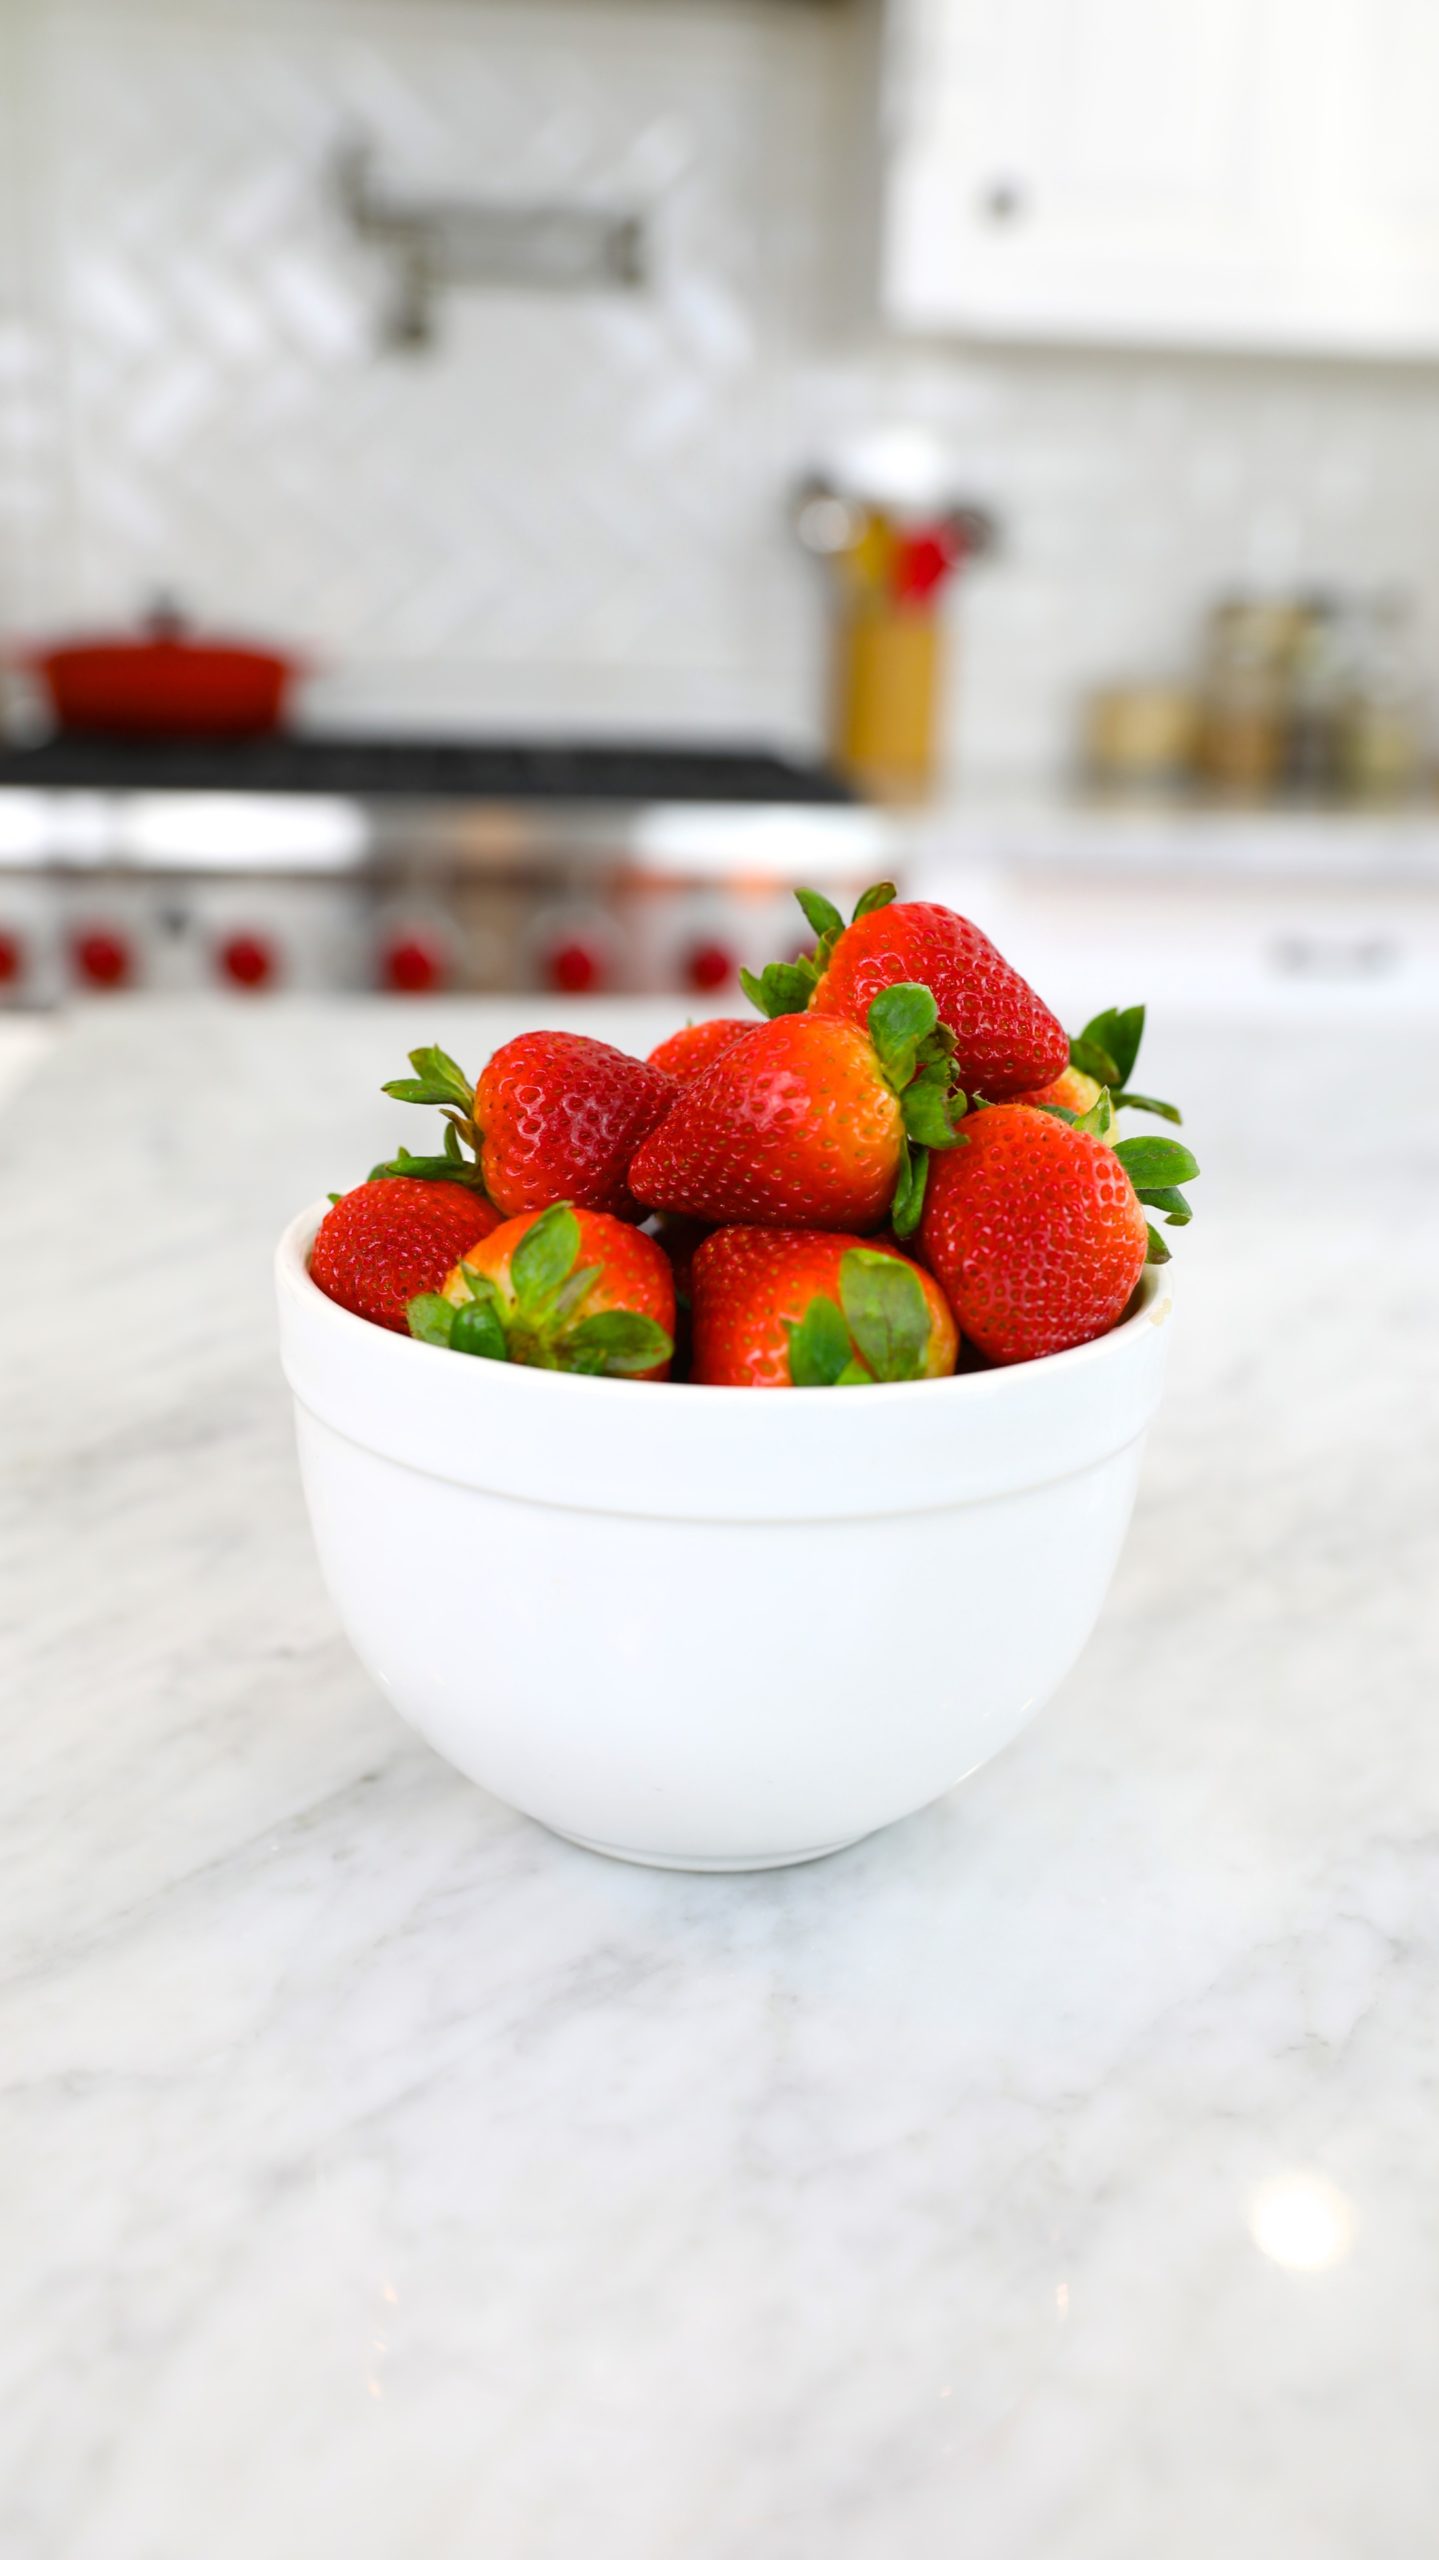 nutrient-density of strawberries